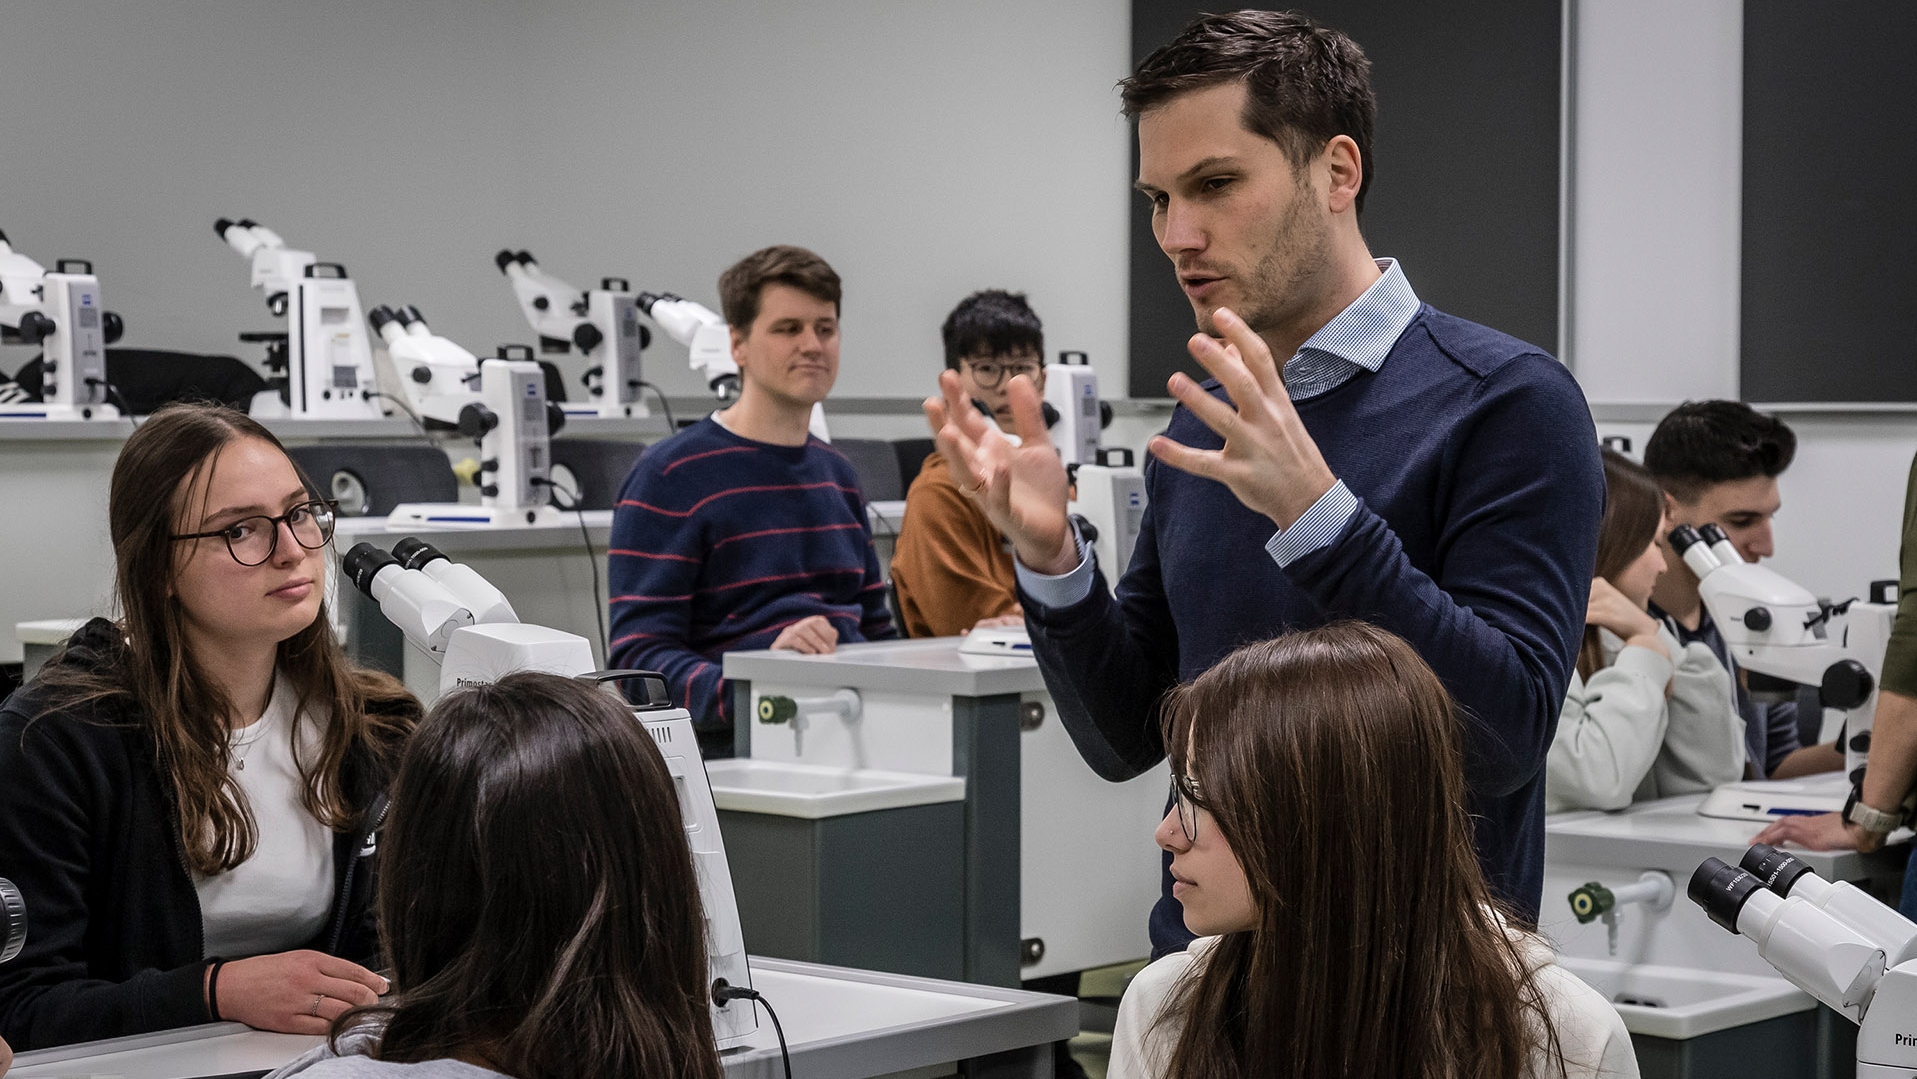 ZEISS Mikroskopiespezialist Dr. Frank Vogler richtete das Digitale Klassenzimmer ein und zeigte den Schülerinnen und Schülern sowie den Lehrenden, wie die Mikroskope funktionieren. Die Mikroskope und die HD-Streaming-Kameras für die beiden Lehrendengeräte ermöglichen einen praxisbezogenen und gleichzeitig vernetzten, modernen Biologieunterricht.